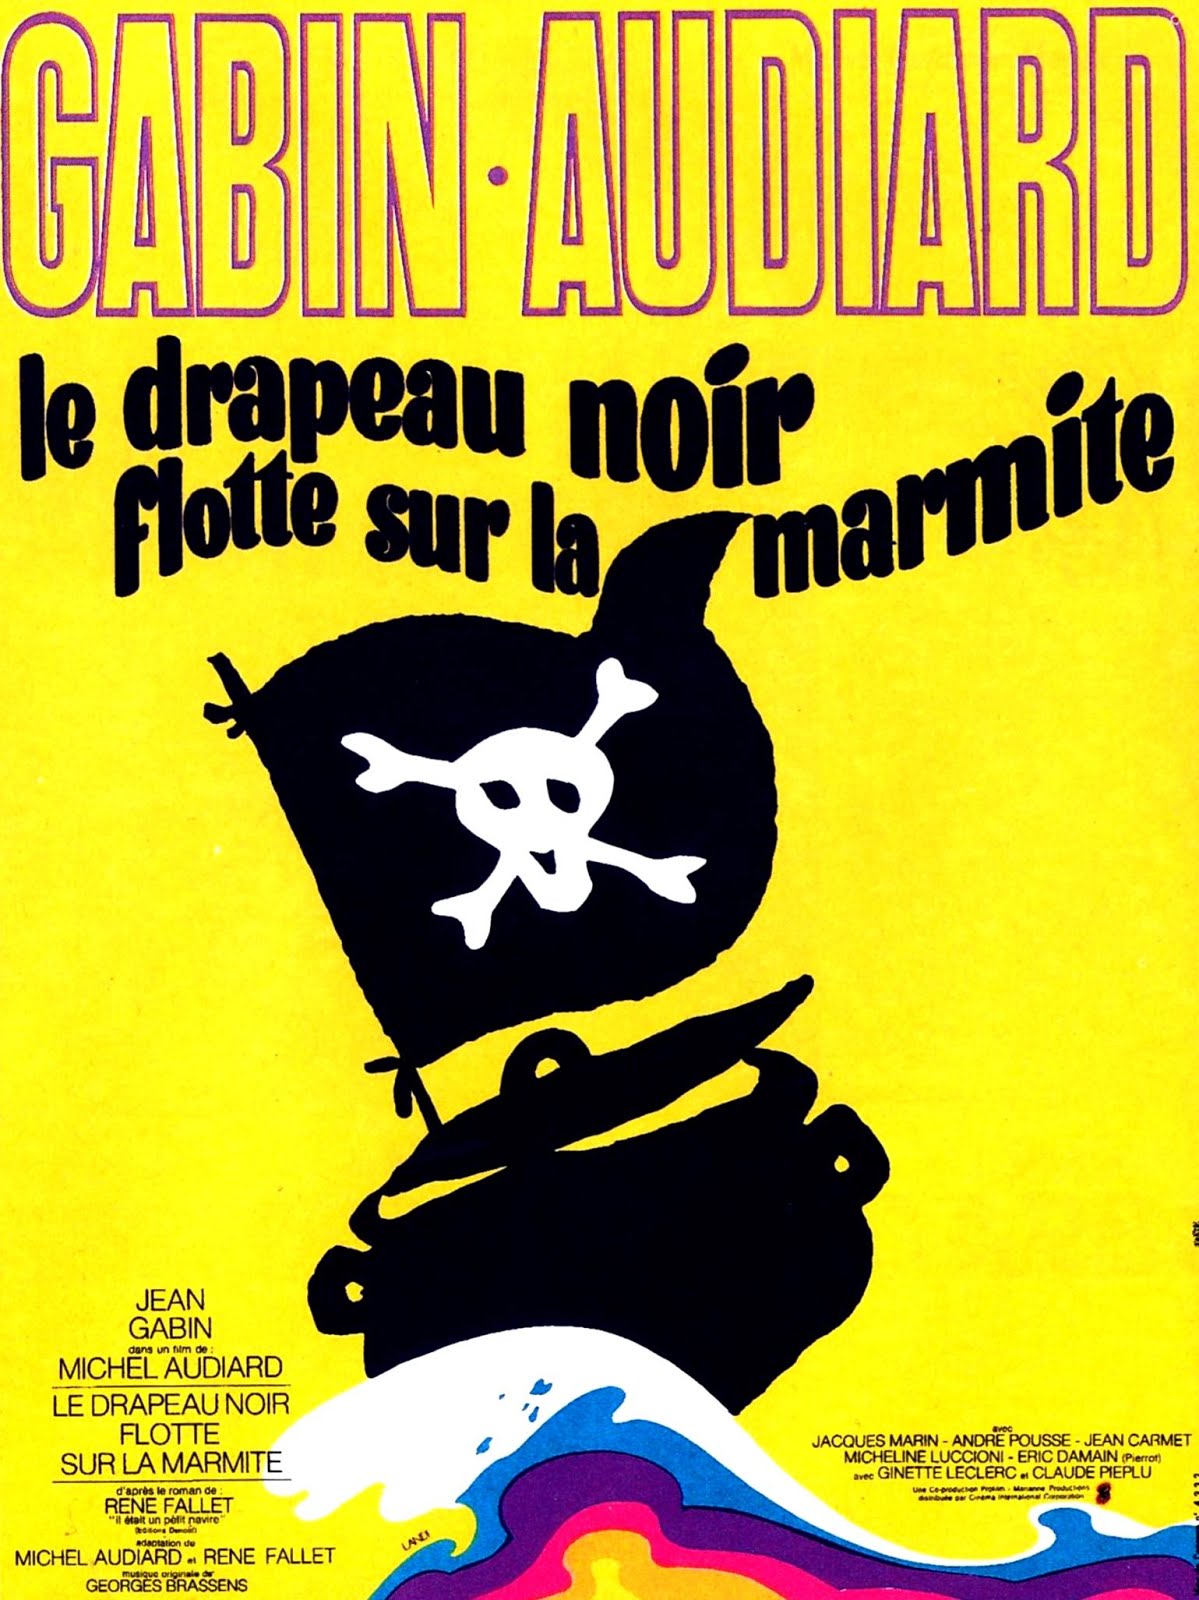 Le drapeau noir flotte sur la marmite (1971) Michel Audiard - Le drapeau noir flotte sur la marmite